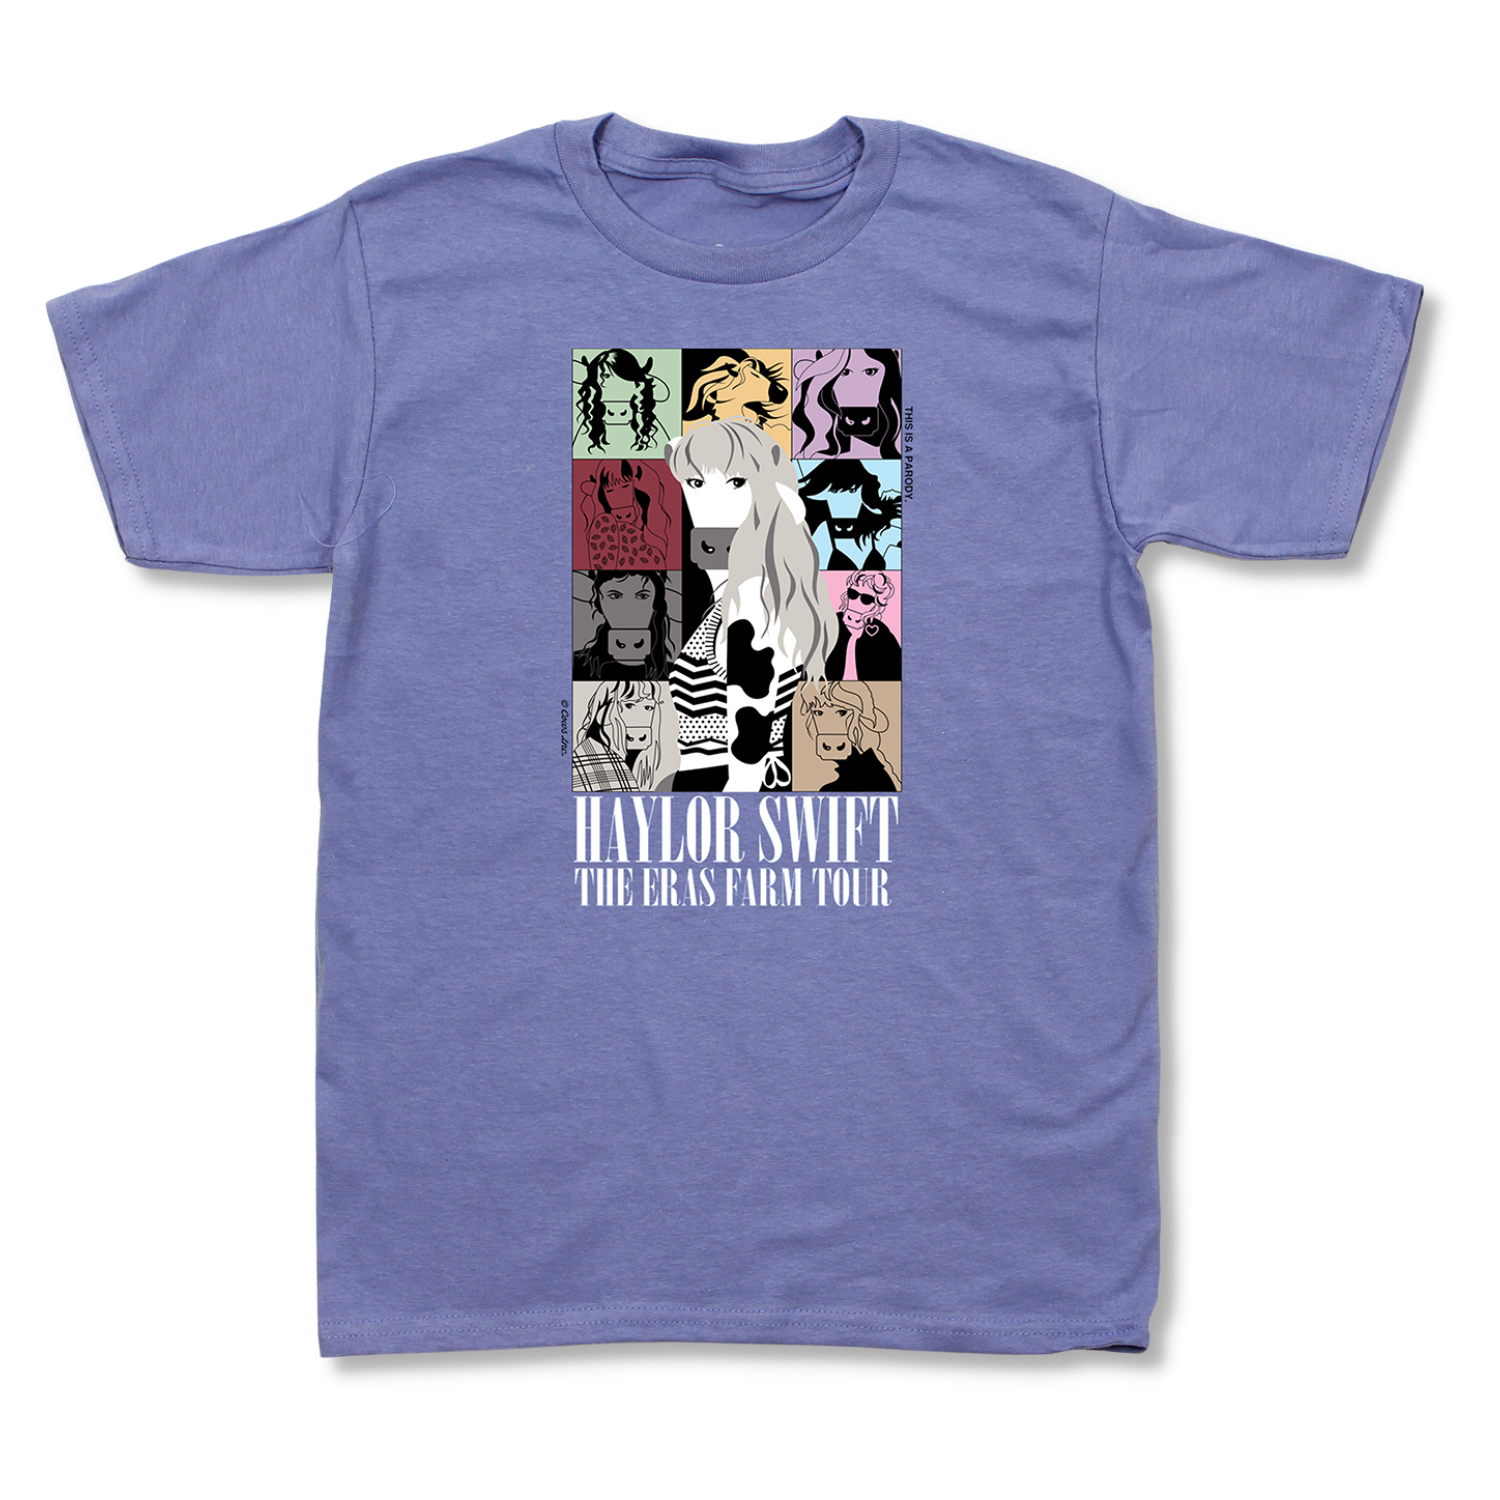 Haylor Swift : The Eras Farm Tour T-shirt pour jeunes